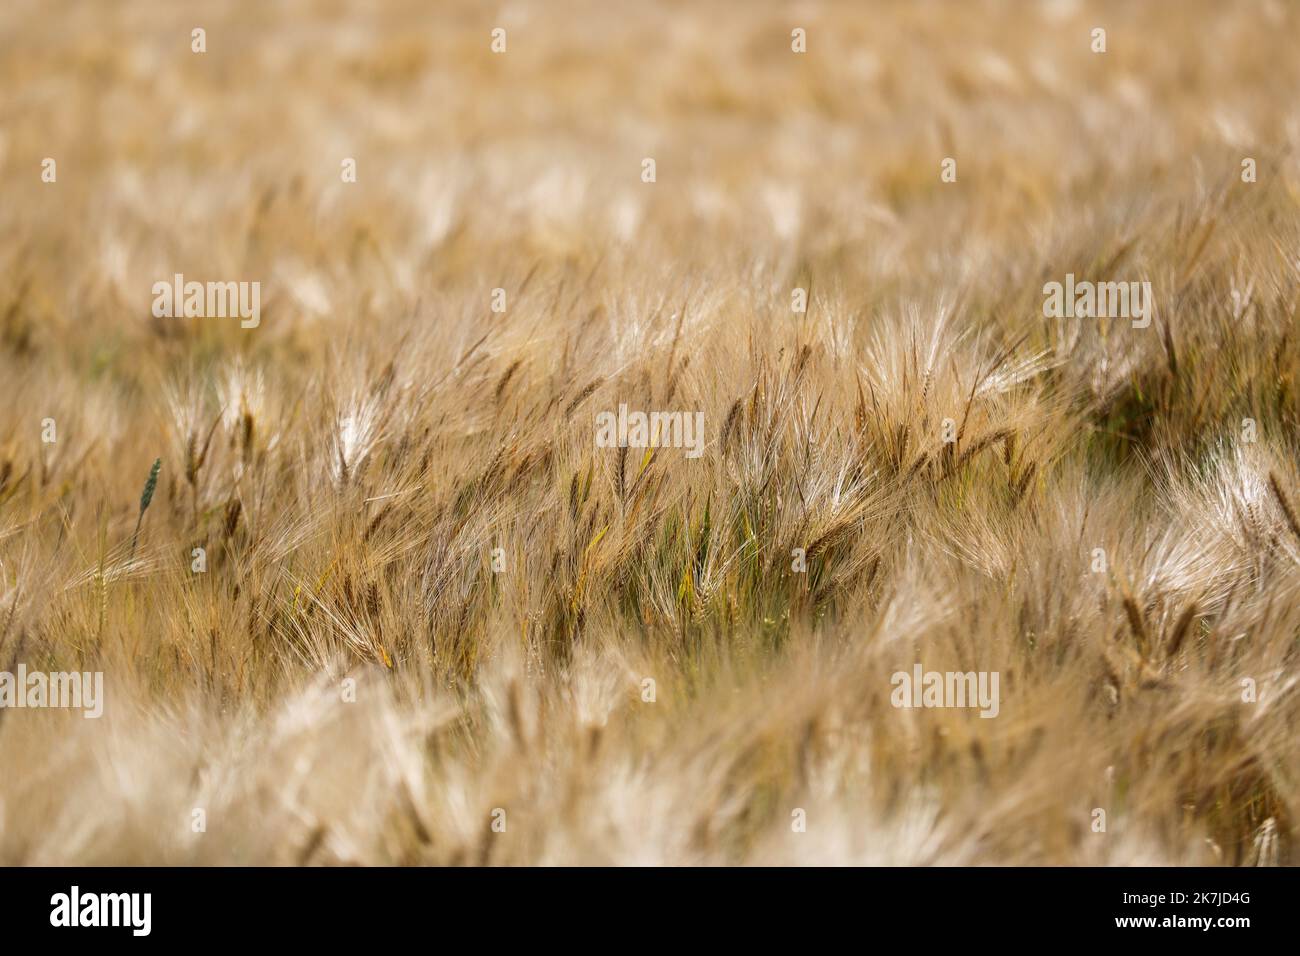 ©PHOTOPQR/VOIX DU NORD/Thierry Thorel ; 22/06/2022 ; Linselles - Le 22 juin 2022 : un champ de ble dans la campagne de la Vallee de la Lys - Photo : Thierry THOREL / La Voix du Nord - STOCK PICTURE a wheat field in the countryside in northern France Stock Photo